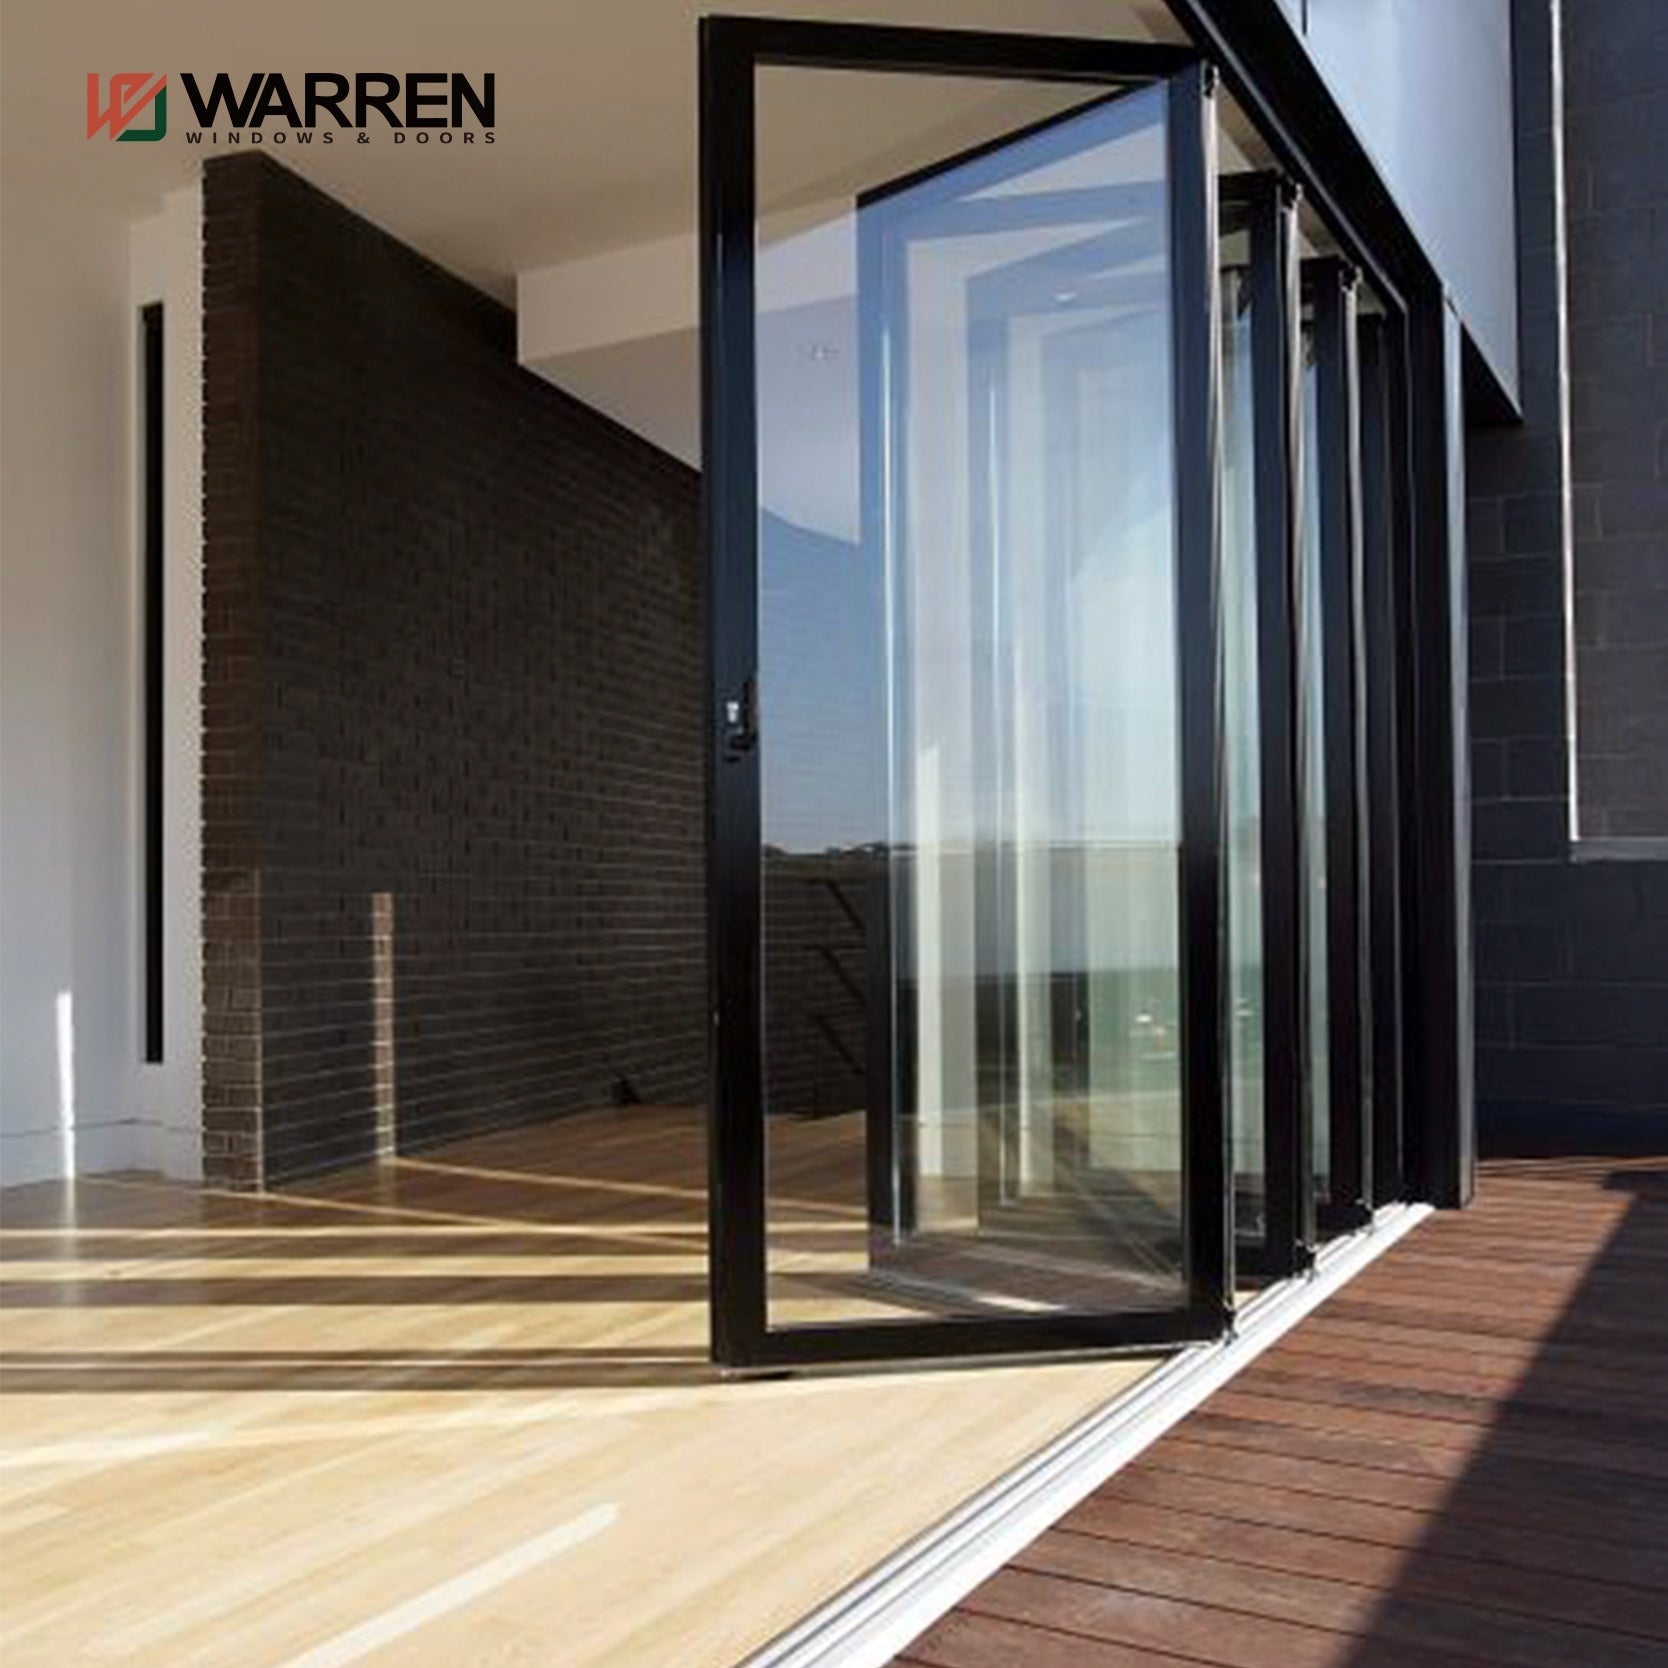 Warren Florida Lightweight Aluminium Australia Standard Glass Doors Bifold Entry Door Price